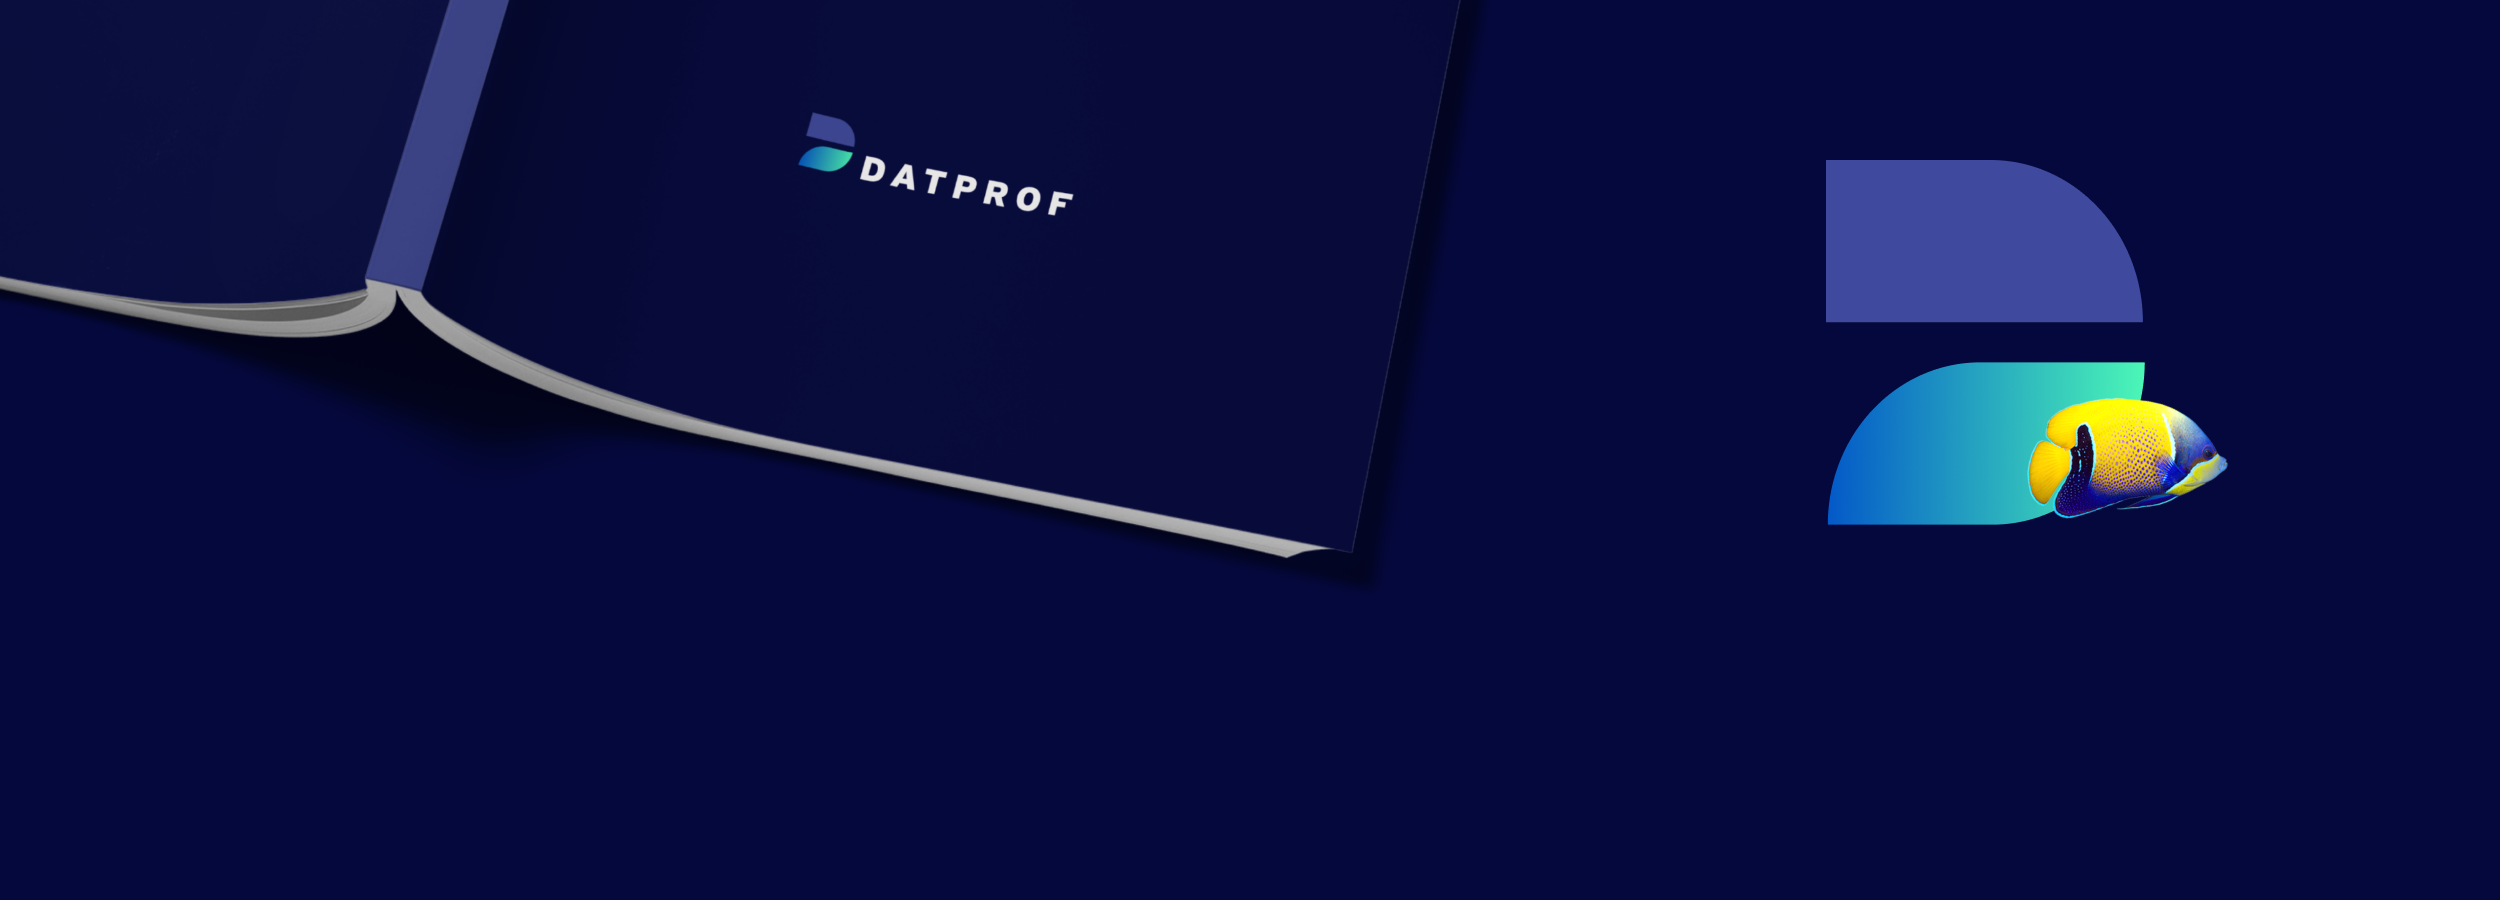 Huisstijl en webdesign voor Datprof